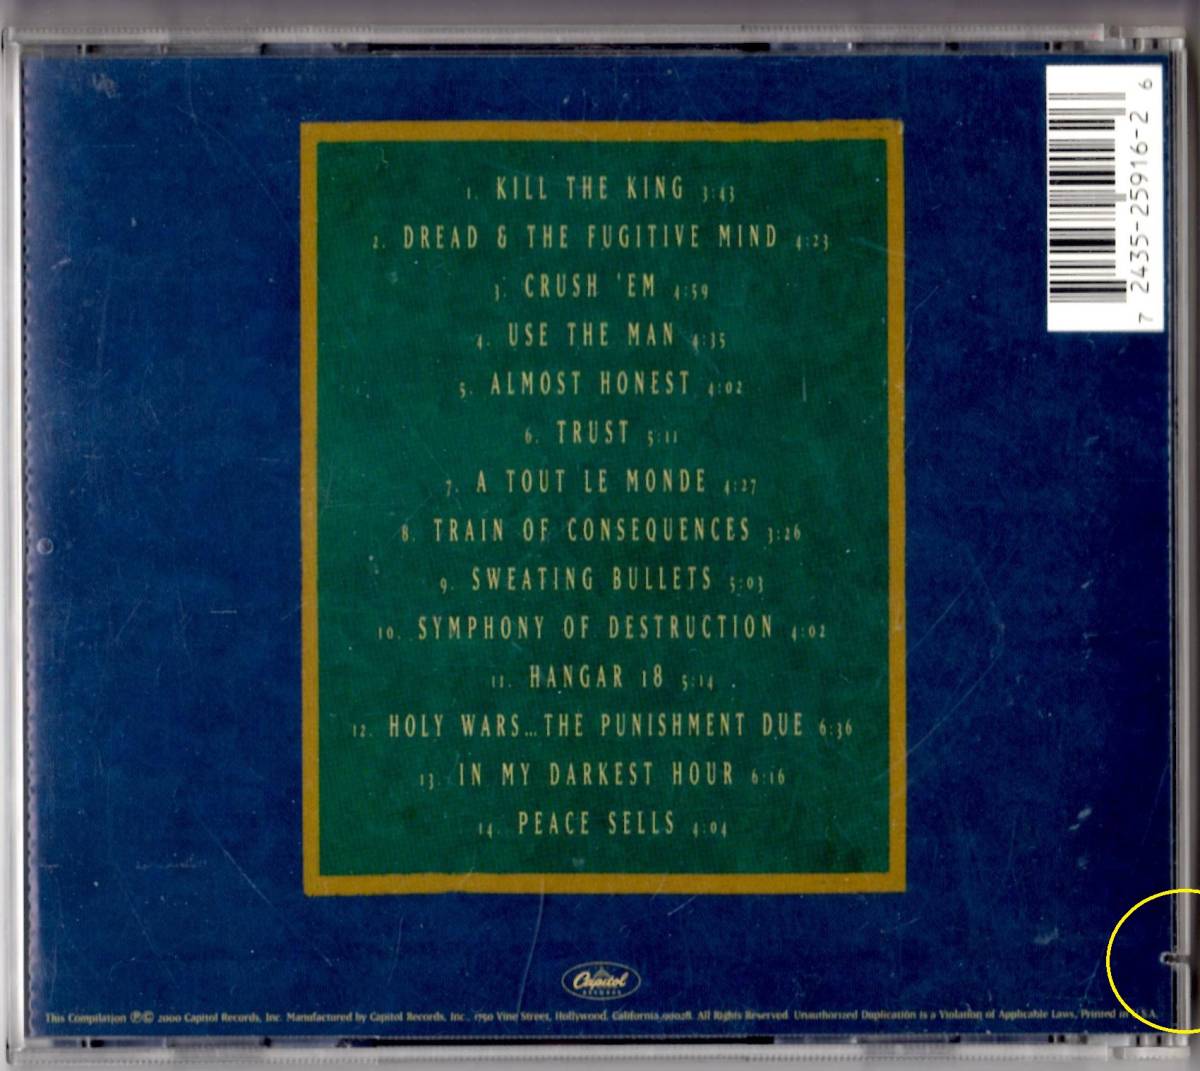 Used CD 輸入盤 メガデス Megadeth『キャピトル・パニッシュメント:ザ・メガデス・イヤーズ』傷有り- Capitol Punishment (2000年)全14曲の画像2